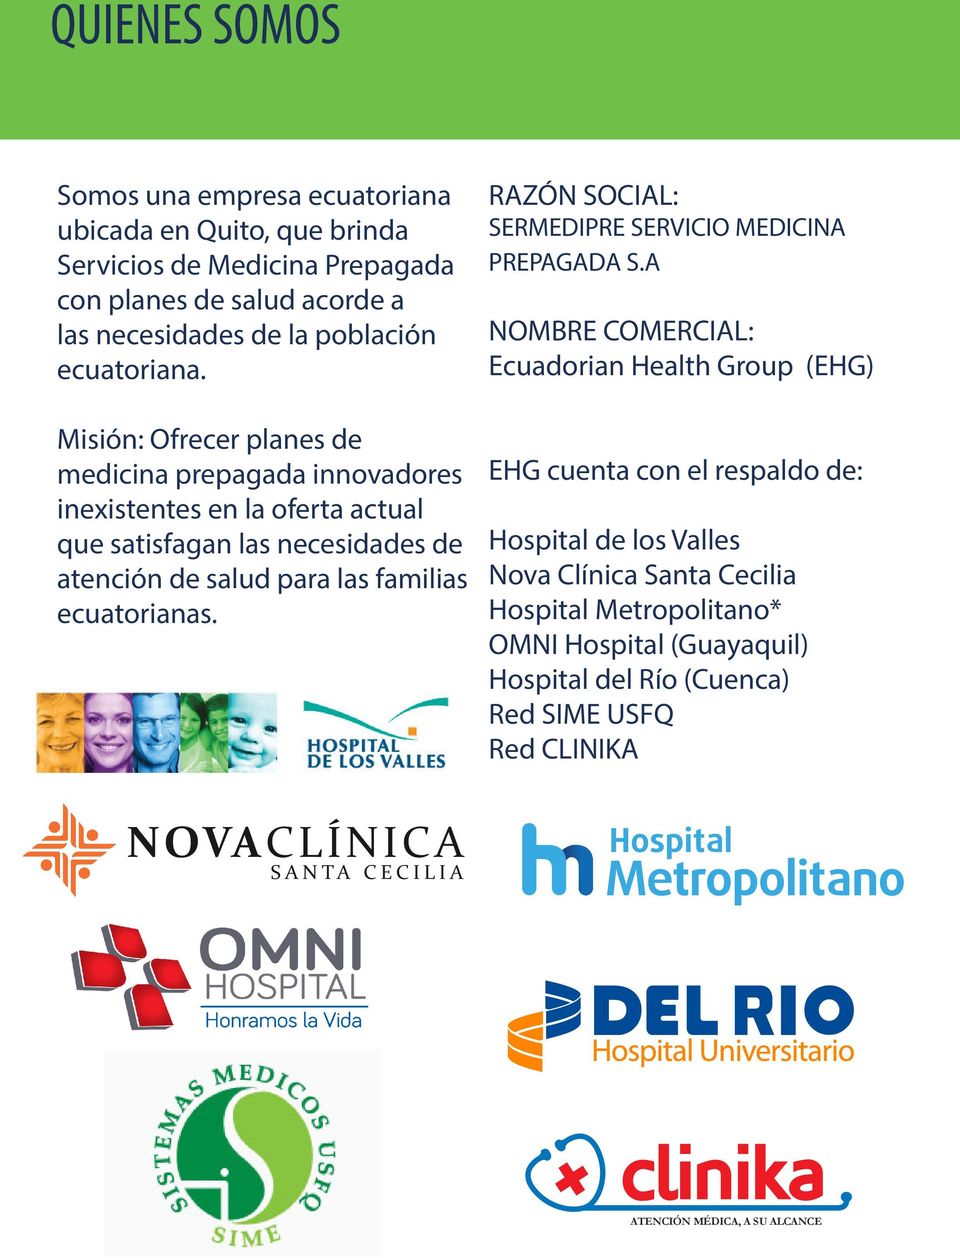 Misión: Ofrecer planes de medicina prepagada innovadores inexistentes en la oferta actual que satisfagan las necesidades de atención de salud para las familias ecuatorianas.